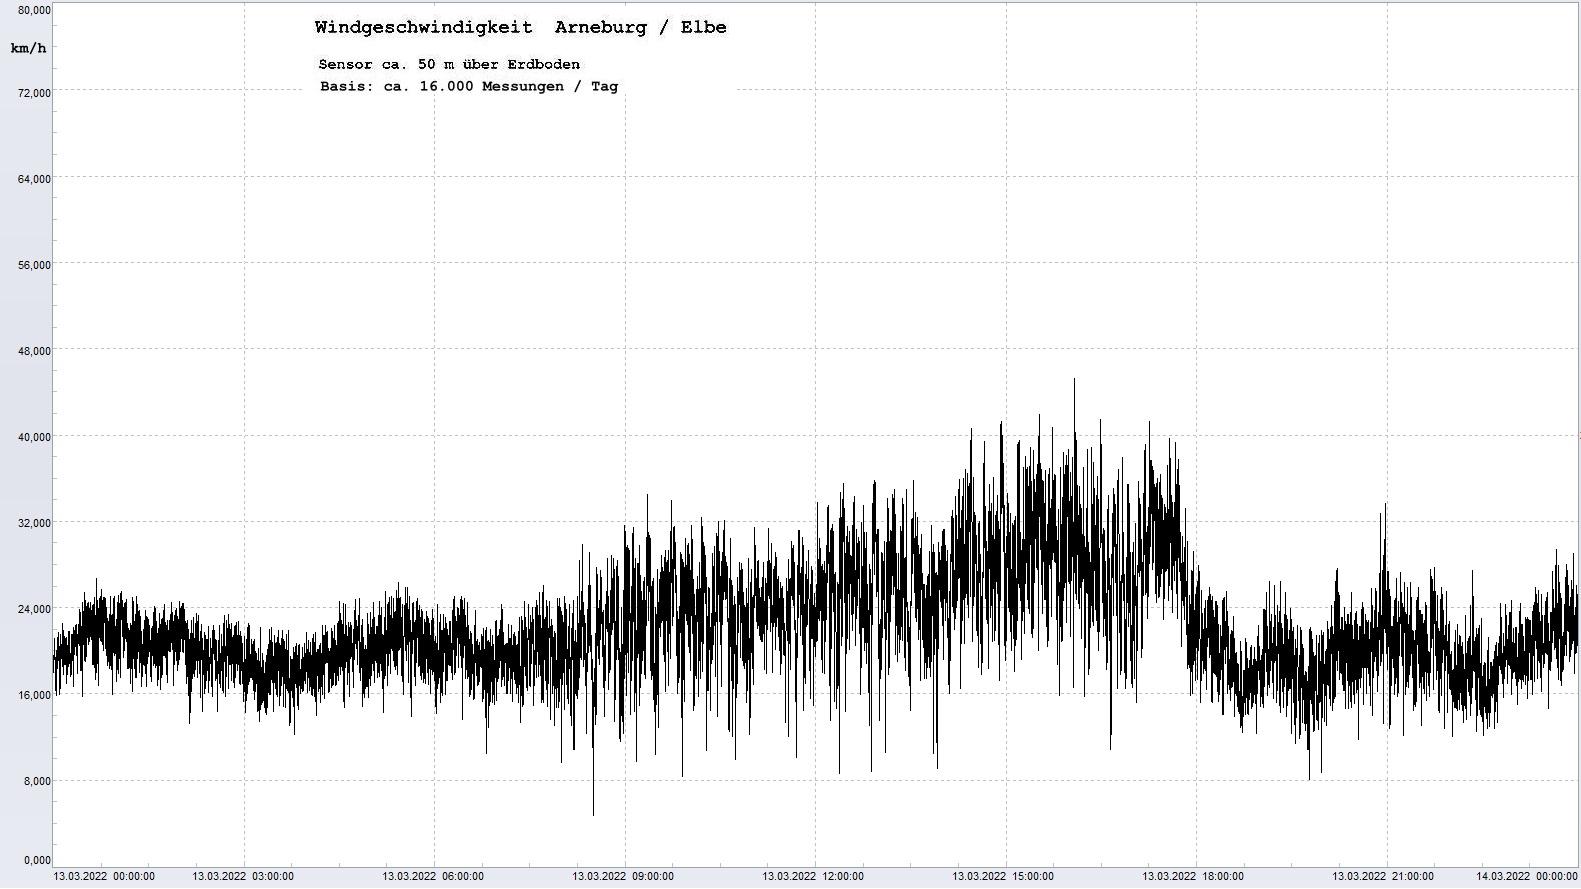 Arneburg Tages-Diagramm Winddaten, 13.03.2022
  Diagramm, Sensor auf Gebude, ca. 50 m ber Erdboden, Basis: 5s-Aufzeichnung